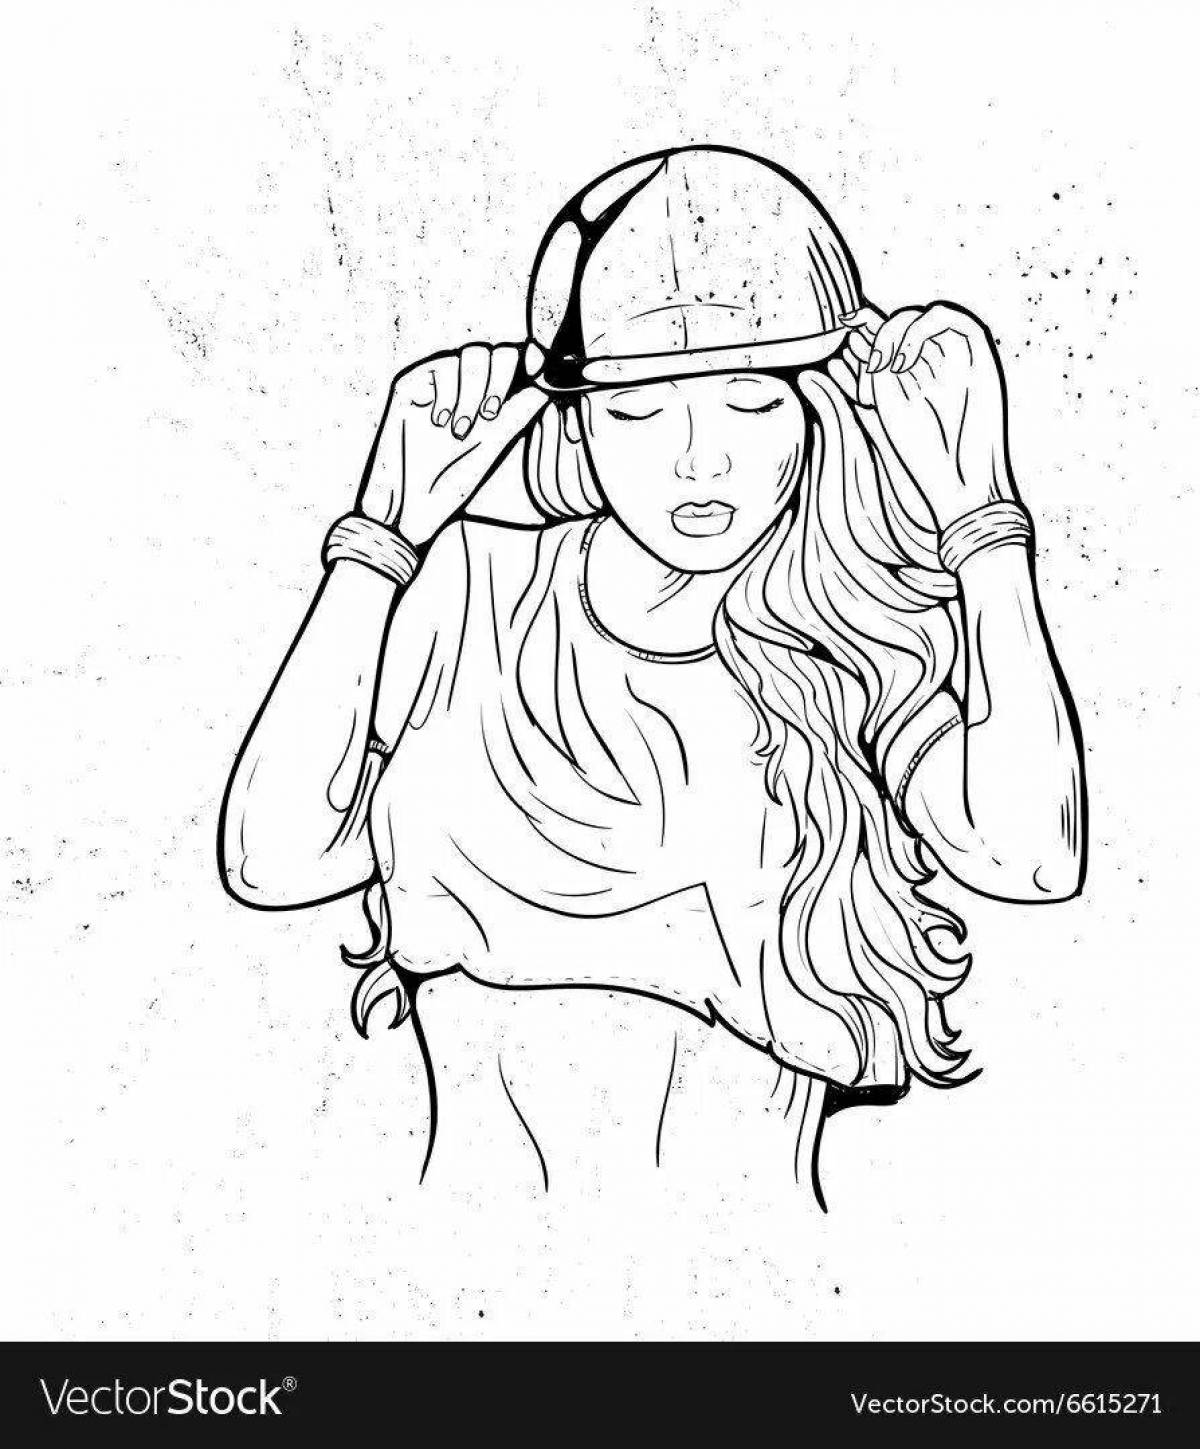 Girl wearing headphones #3